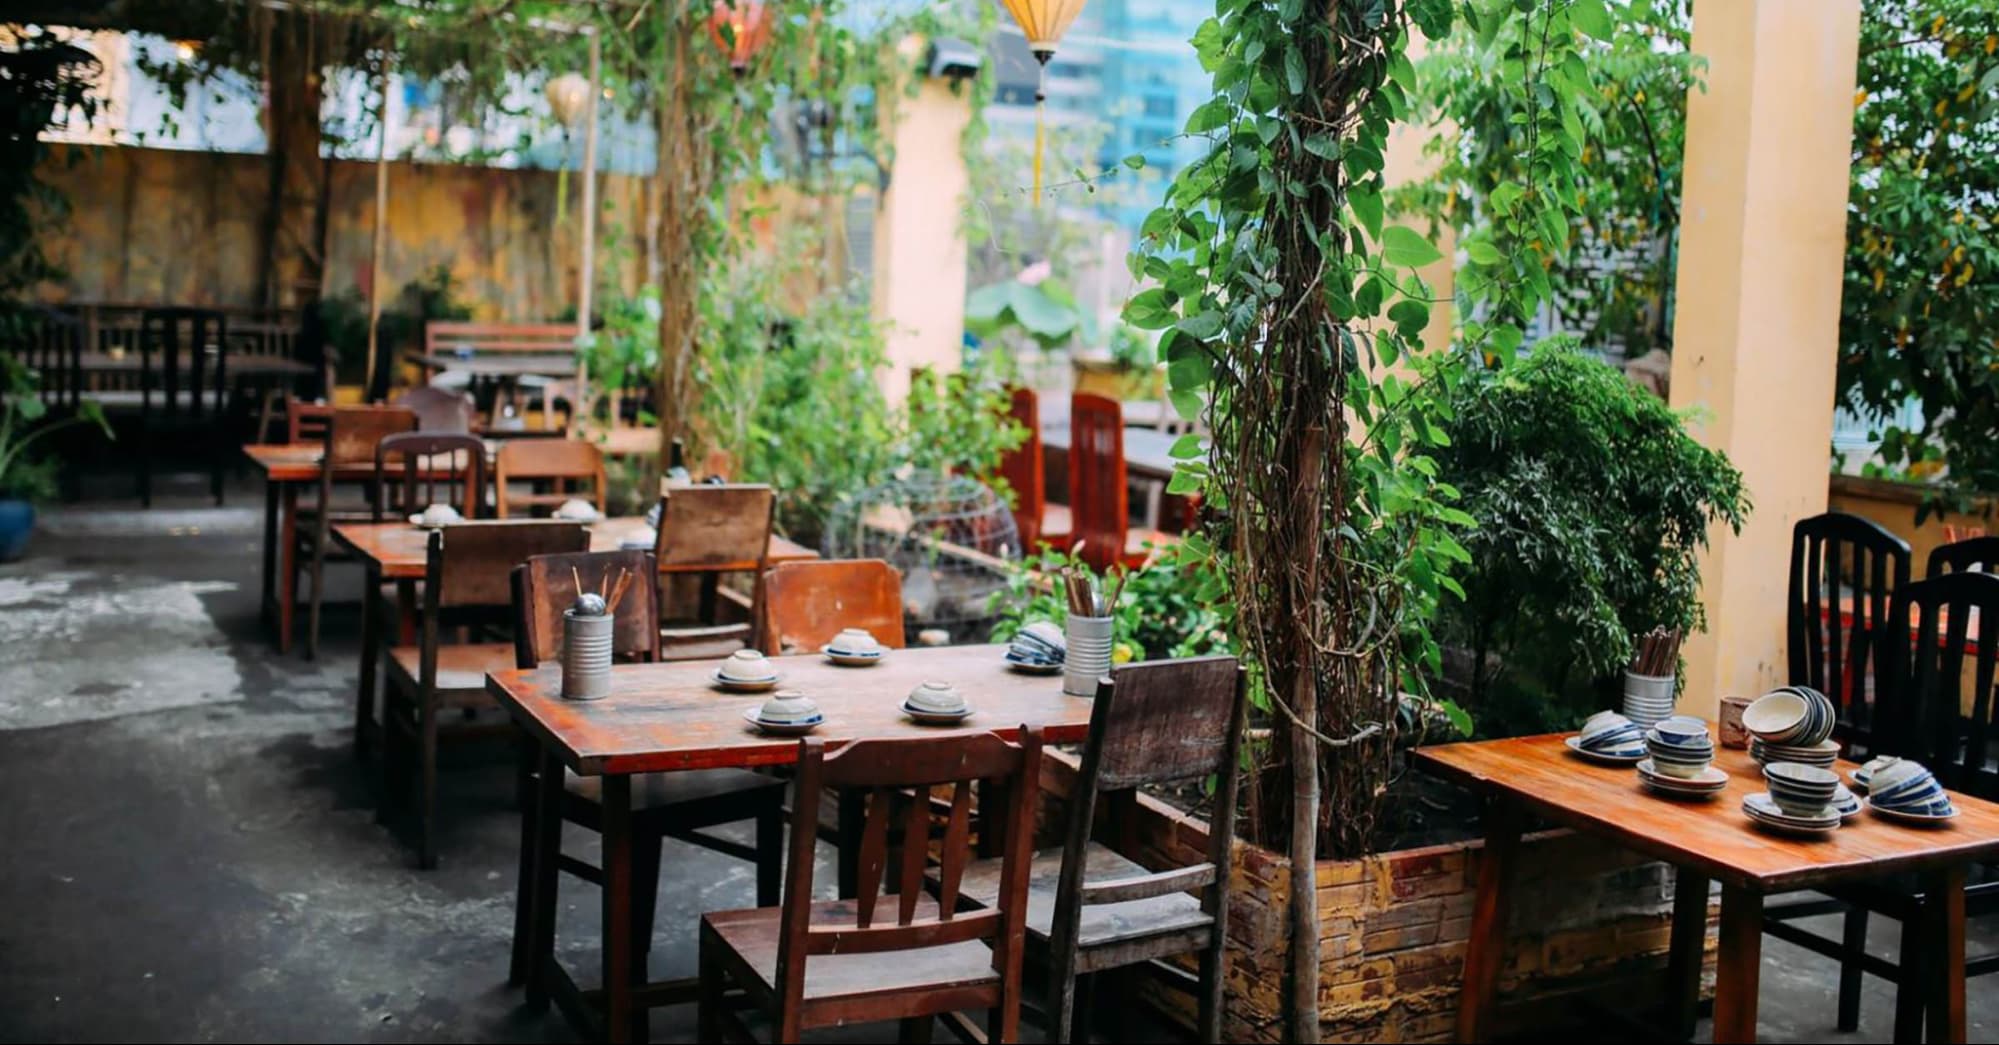 Nhà hàng sân vườn theo phong cách Việt Nam có sự mộc mạc, giản dị và gần gũi